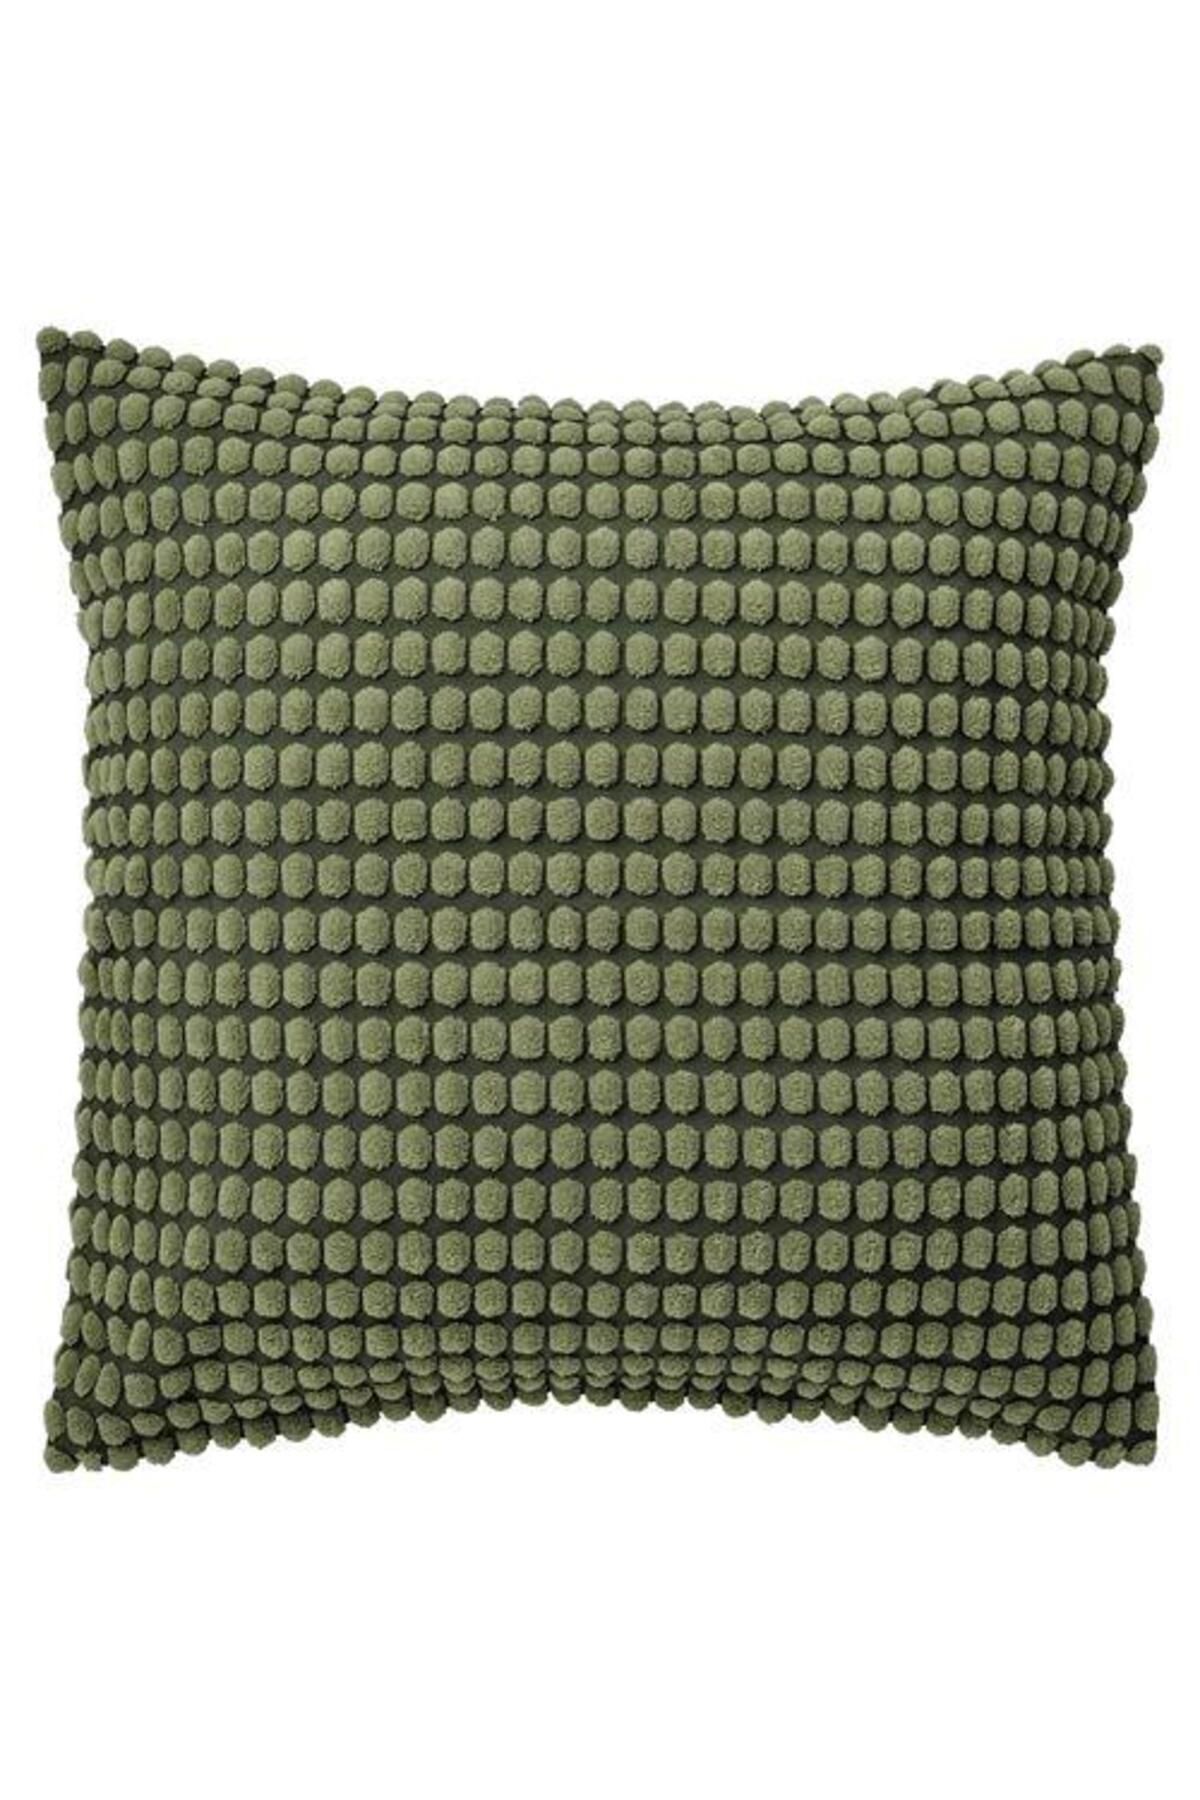 IKEA Kırlent Kılıfı Haki Yeşili Renk Meridyendukkan 65x65 Cm Puantiye Temalı Ev Tekstili